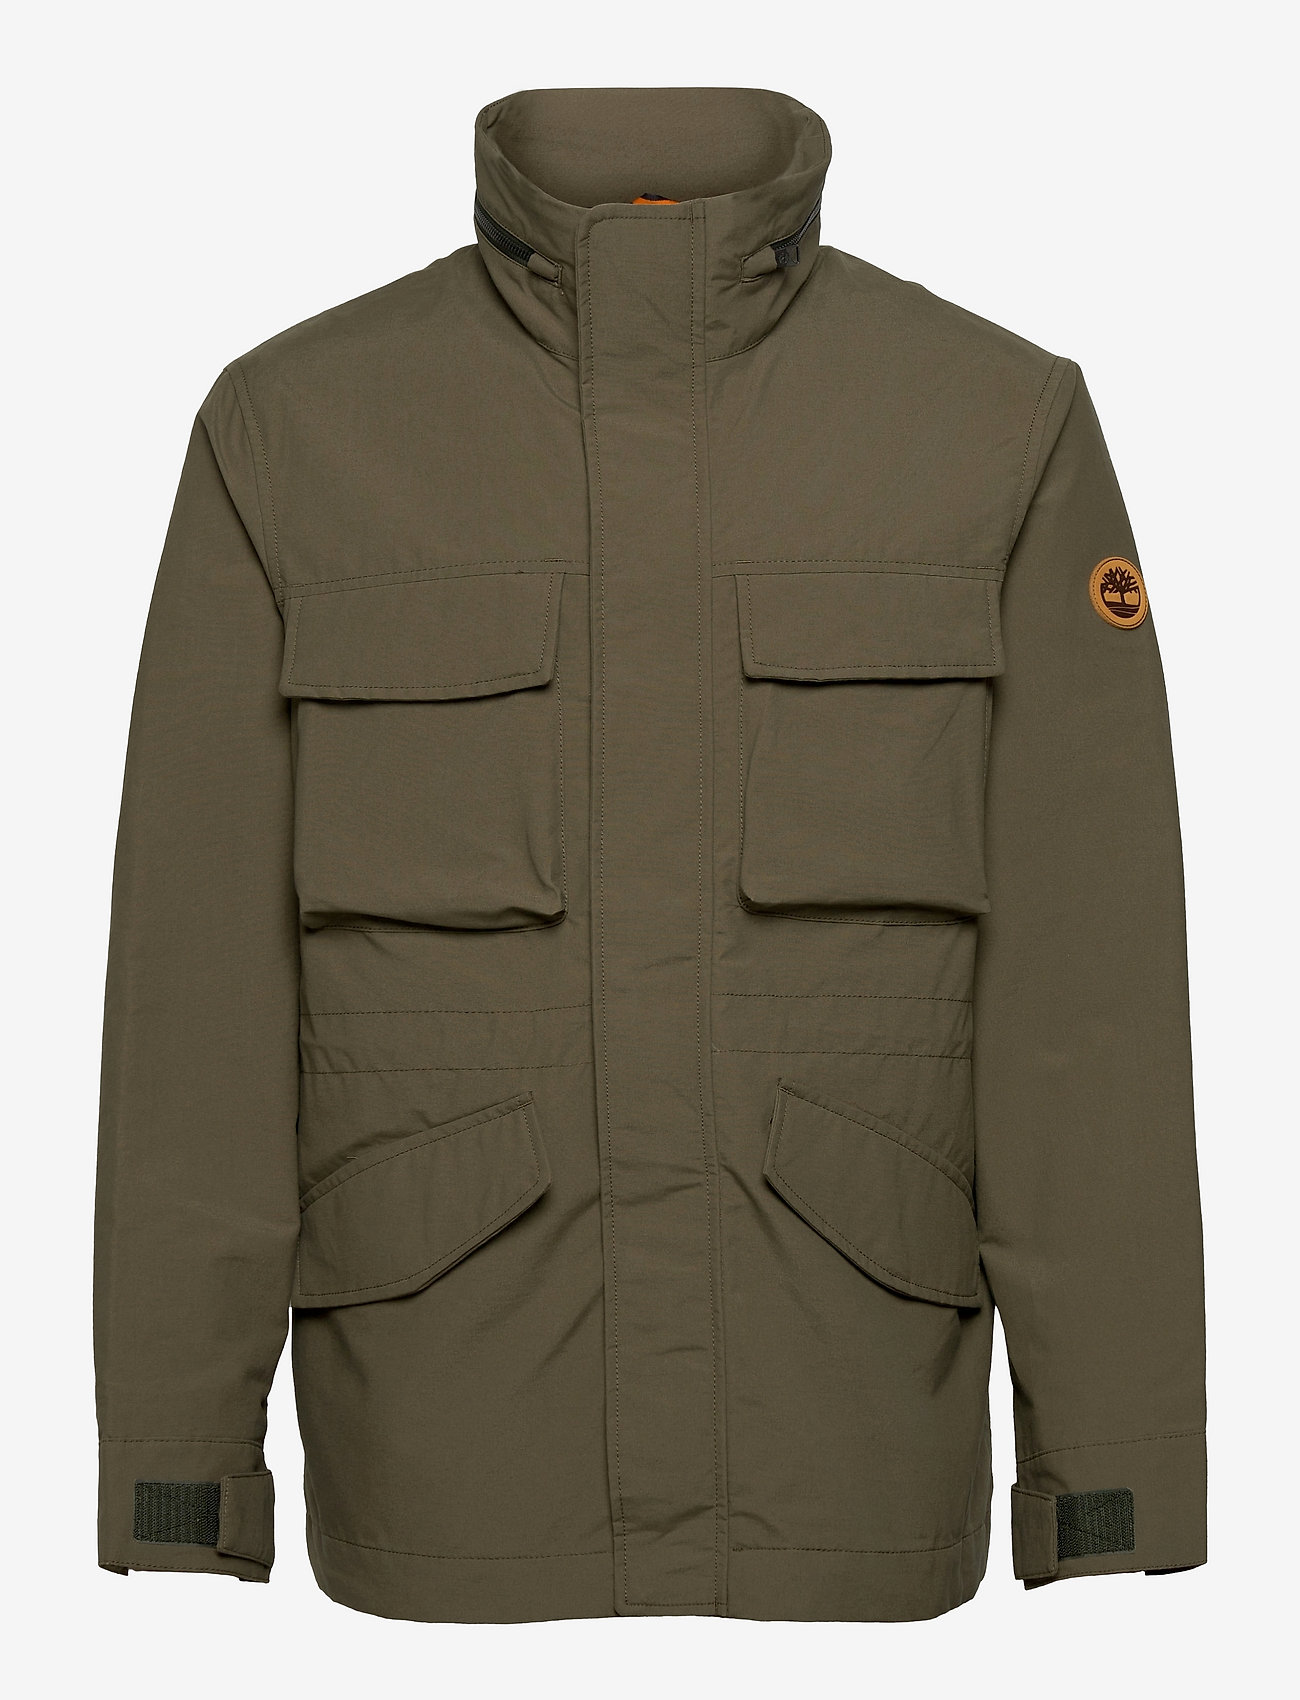 Timberland - HR M65 Jkt - spring jackets - grape leaf - 0